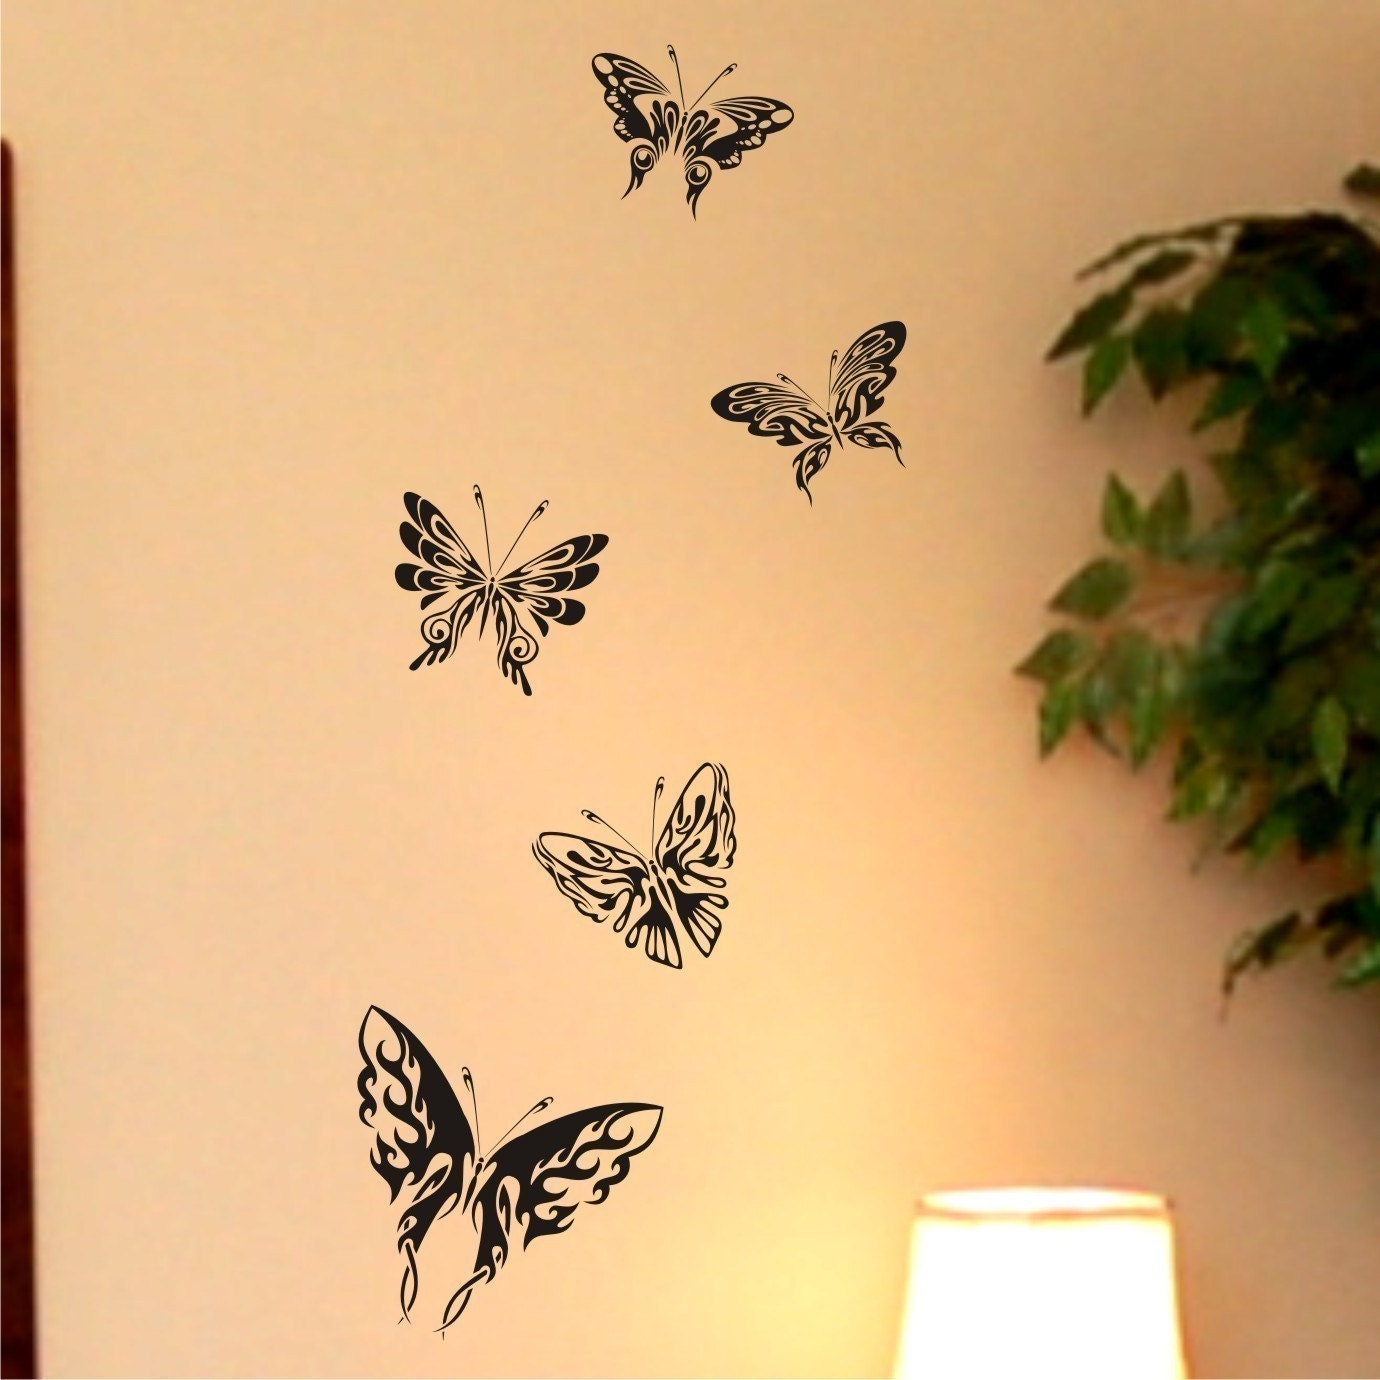 A Group of 5 Butterflies - Vinyl Wall Art Graphic Decal Sticker